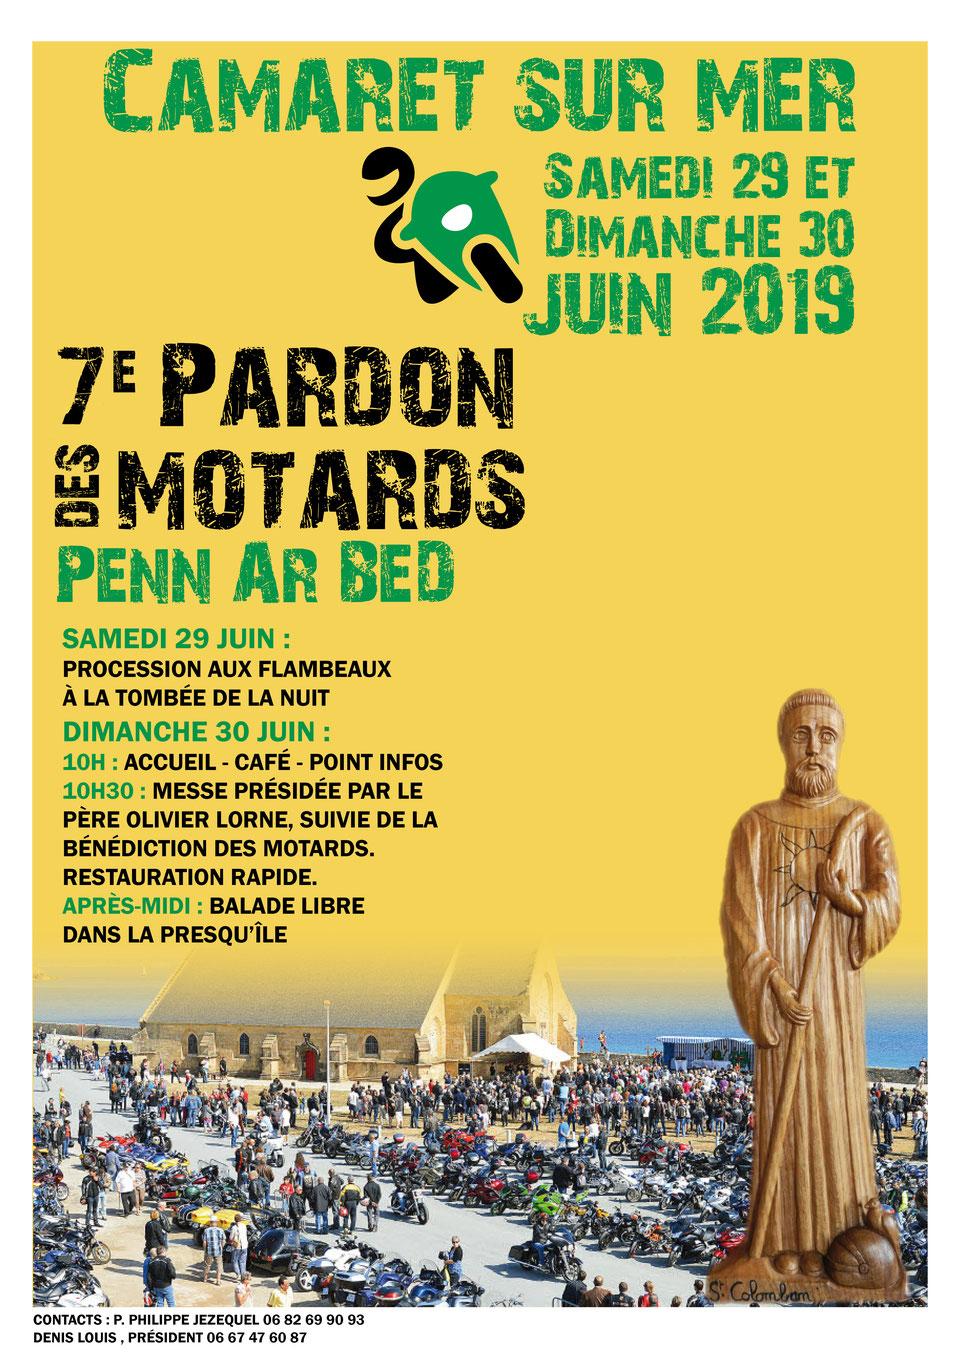 EVENEMENTS MOTOS ANCIENNES Calendrier évènementiel des Grands-Mères Motos Montmorillonnaises 2019ca14